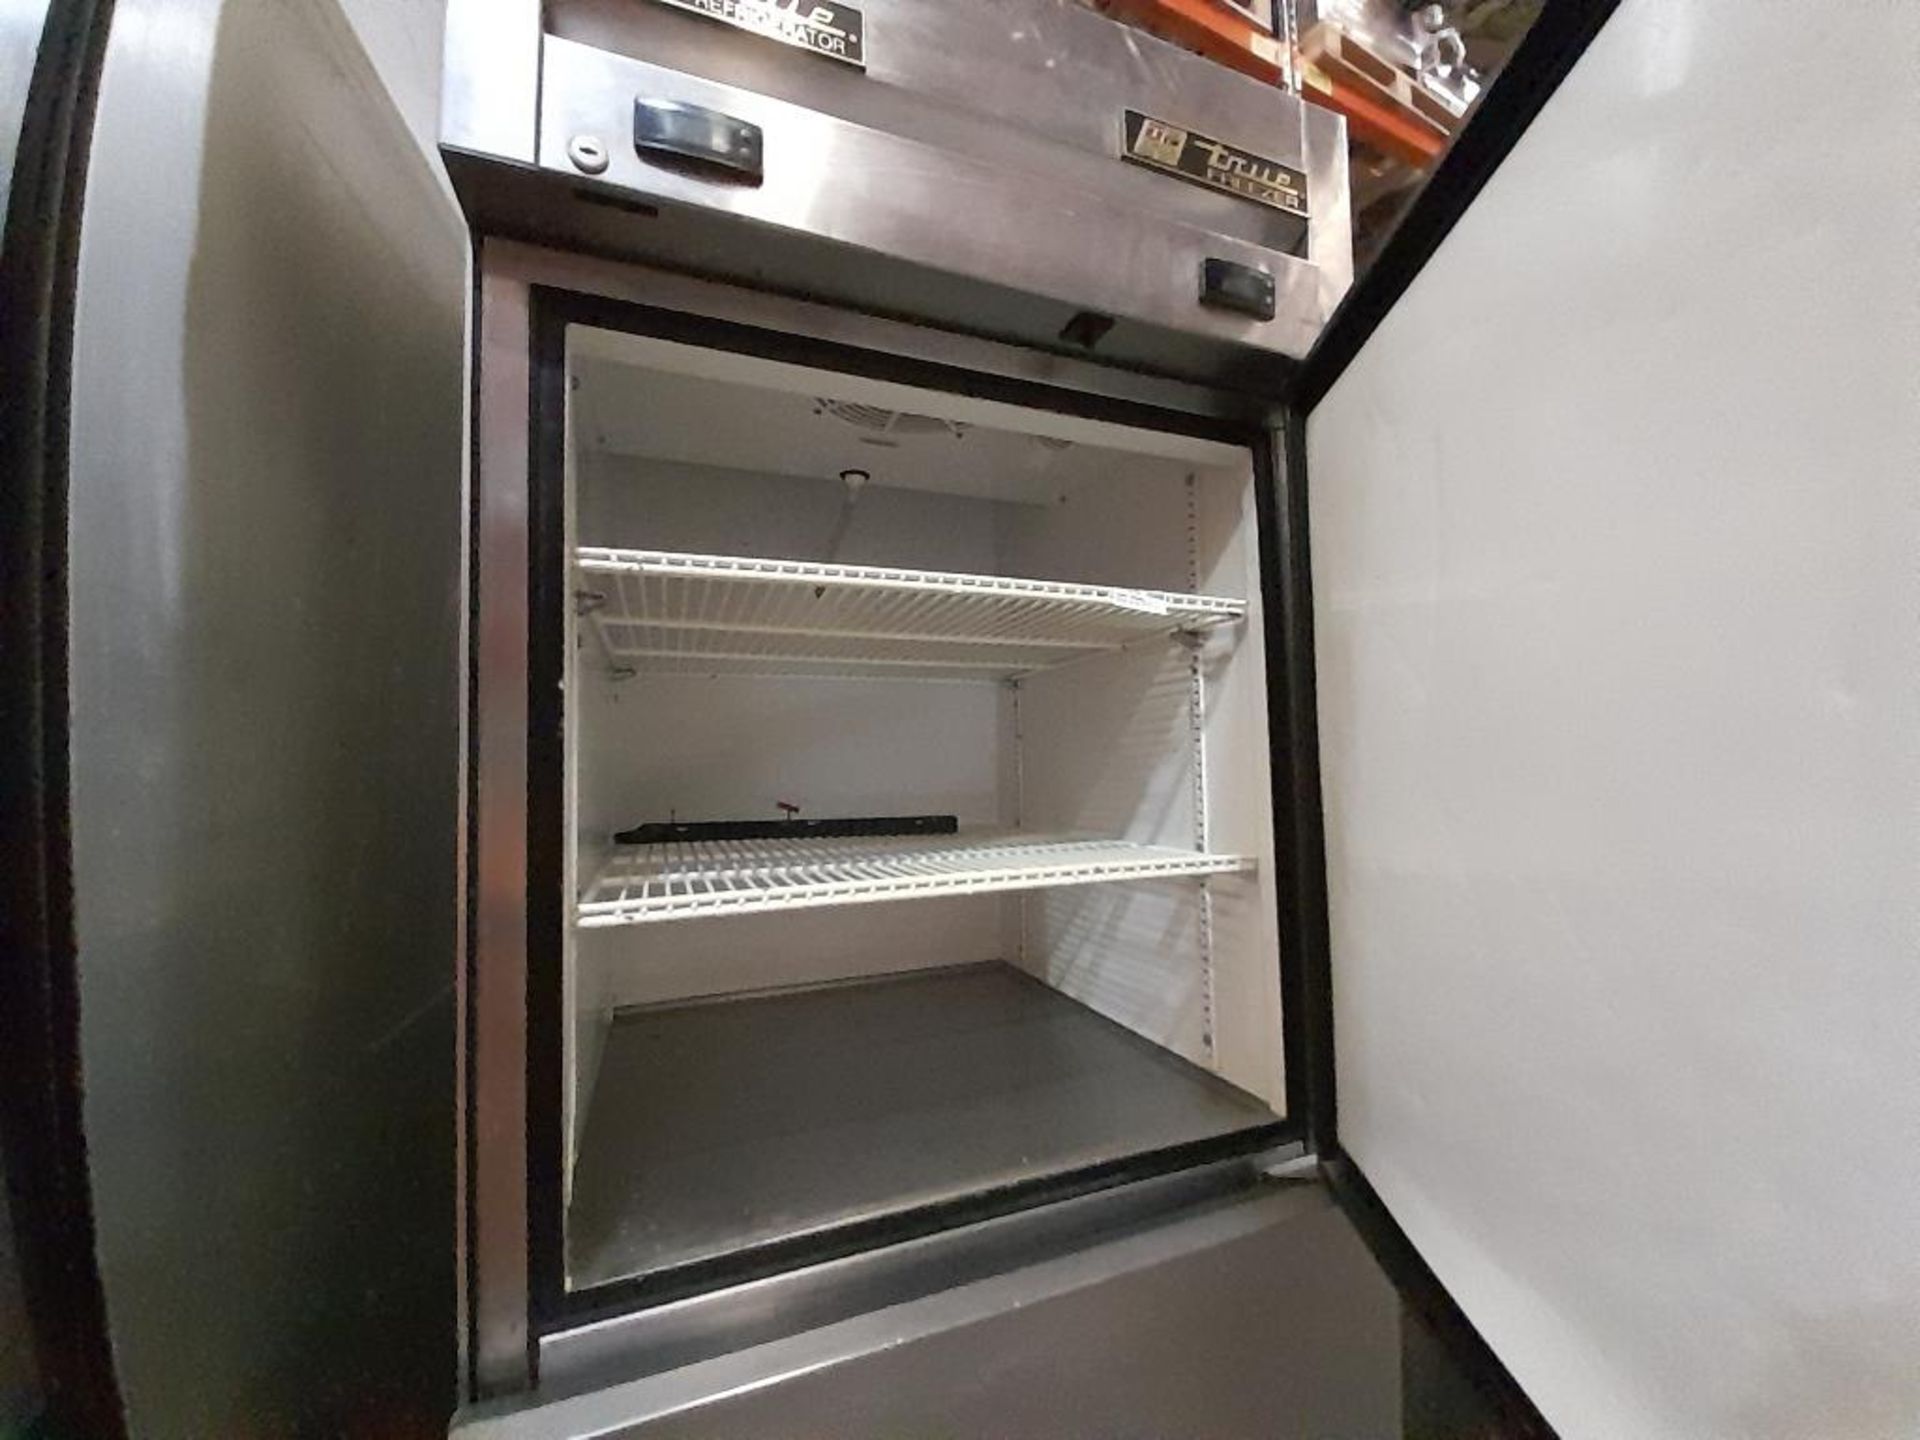 Lote de 2 refrigeradores: 1 Refrigerador en acero inoxidable de dos puertas, Marca TRUE FREEZER, Mo - Image 5 of 6